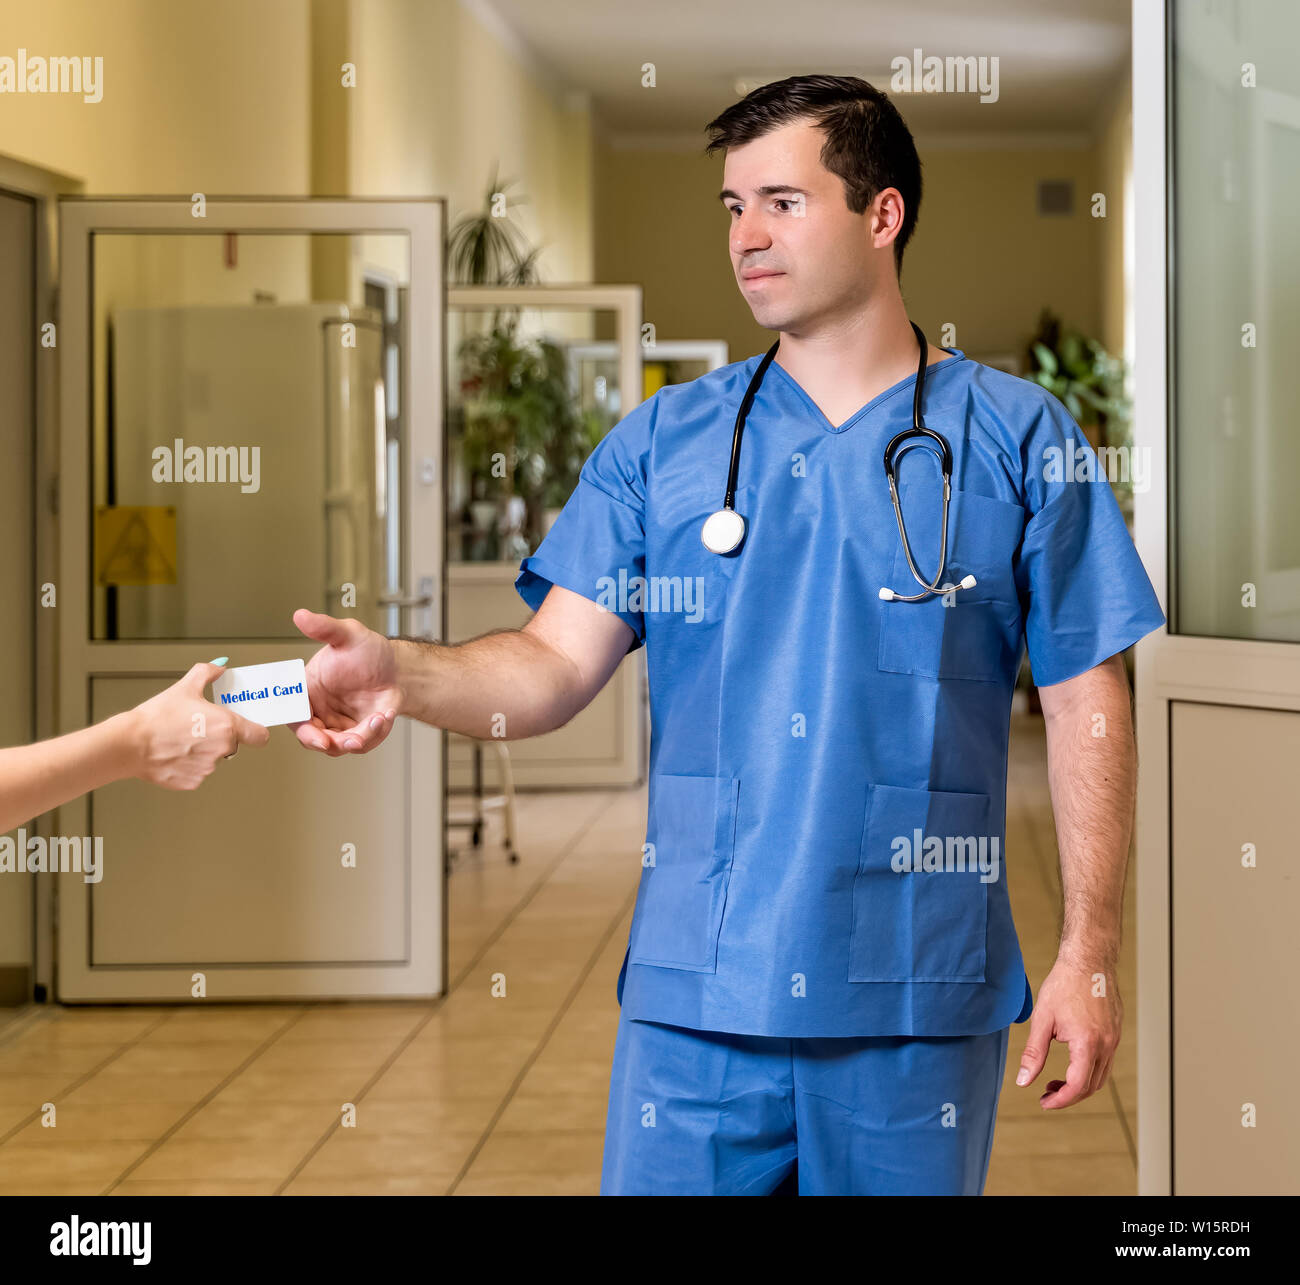 Mittleren Alters, kaukasischen weißen, männlichen Arzt in Scrubs mit Stethoskop akzeptieren Medical Card, verschwommenes Krankenhaus Flur im Hintergrund Stockfoto